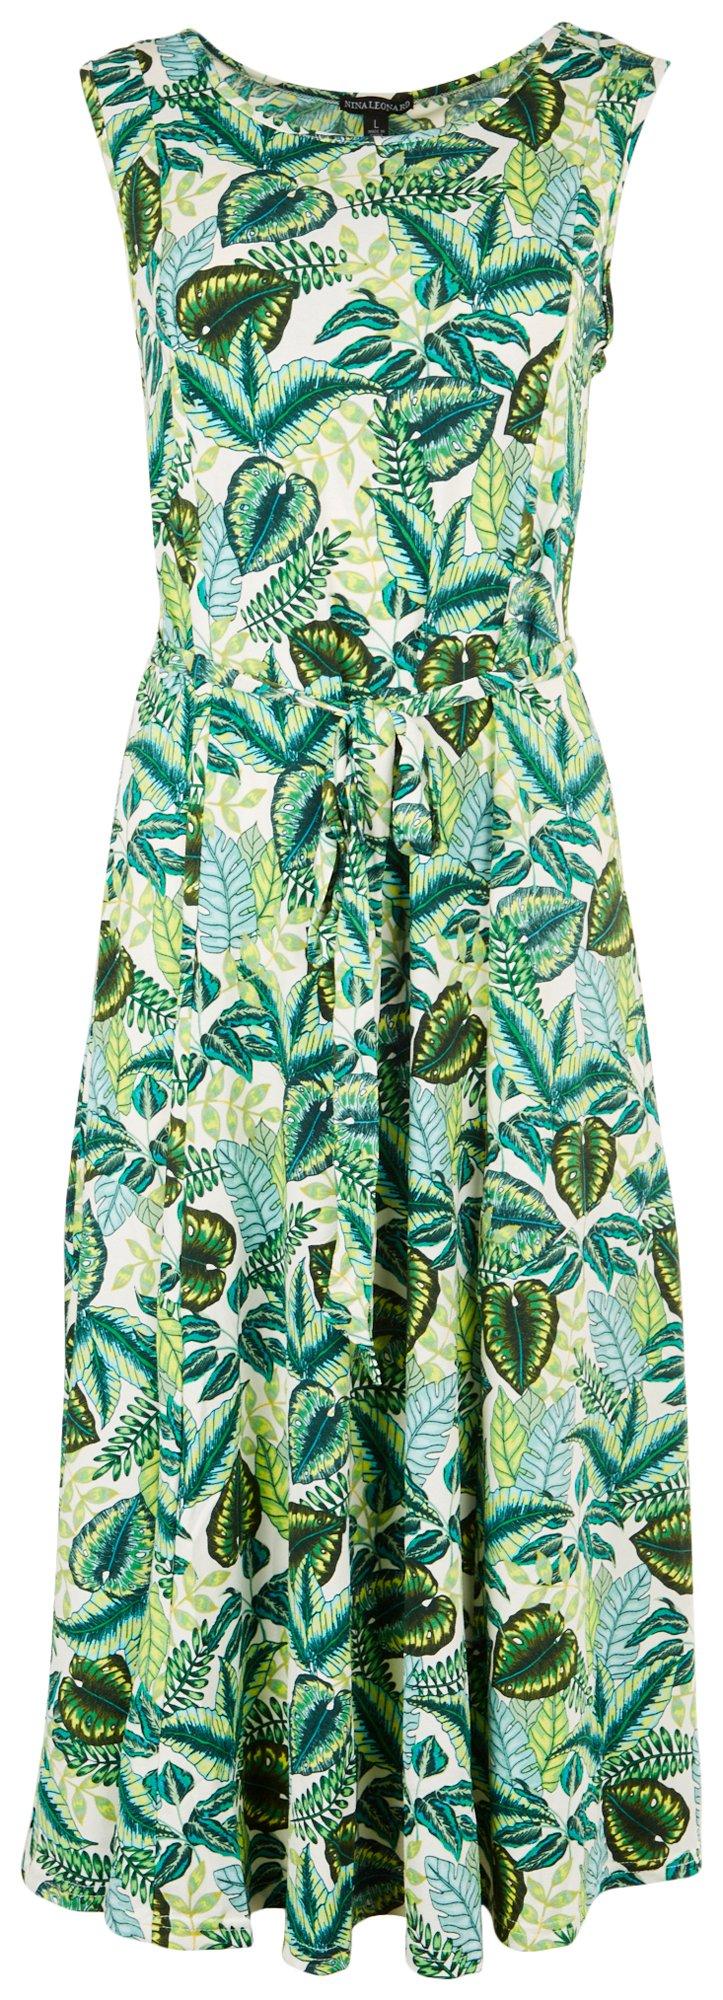 Womens Round Neckline Tropical Print Dress